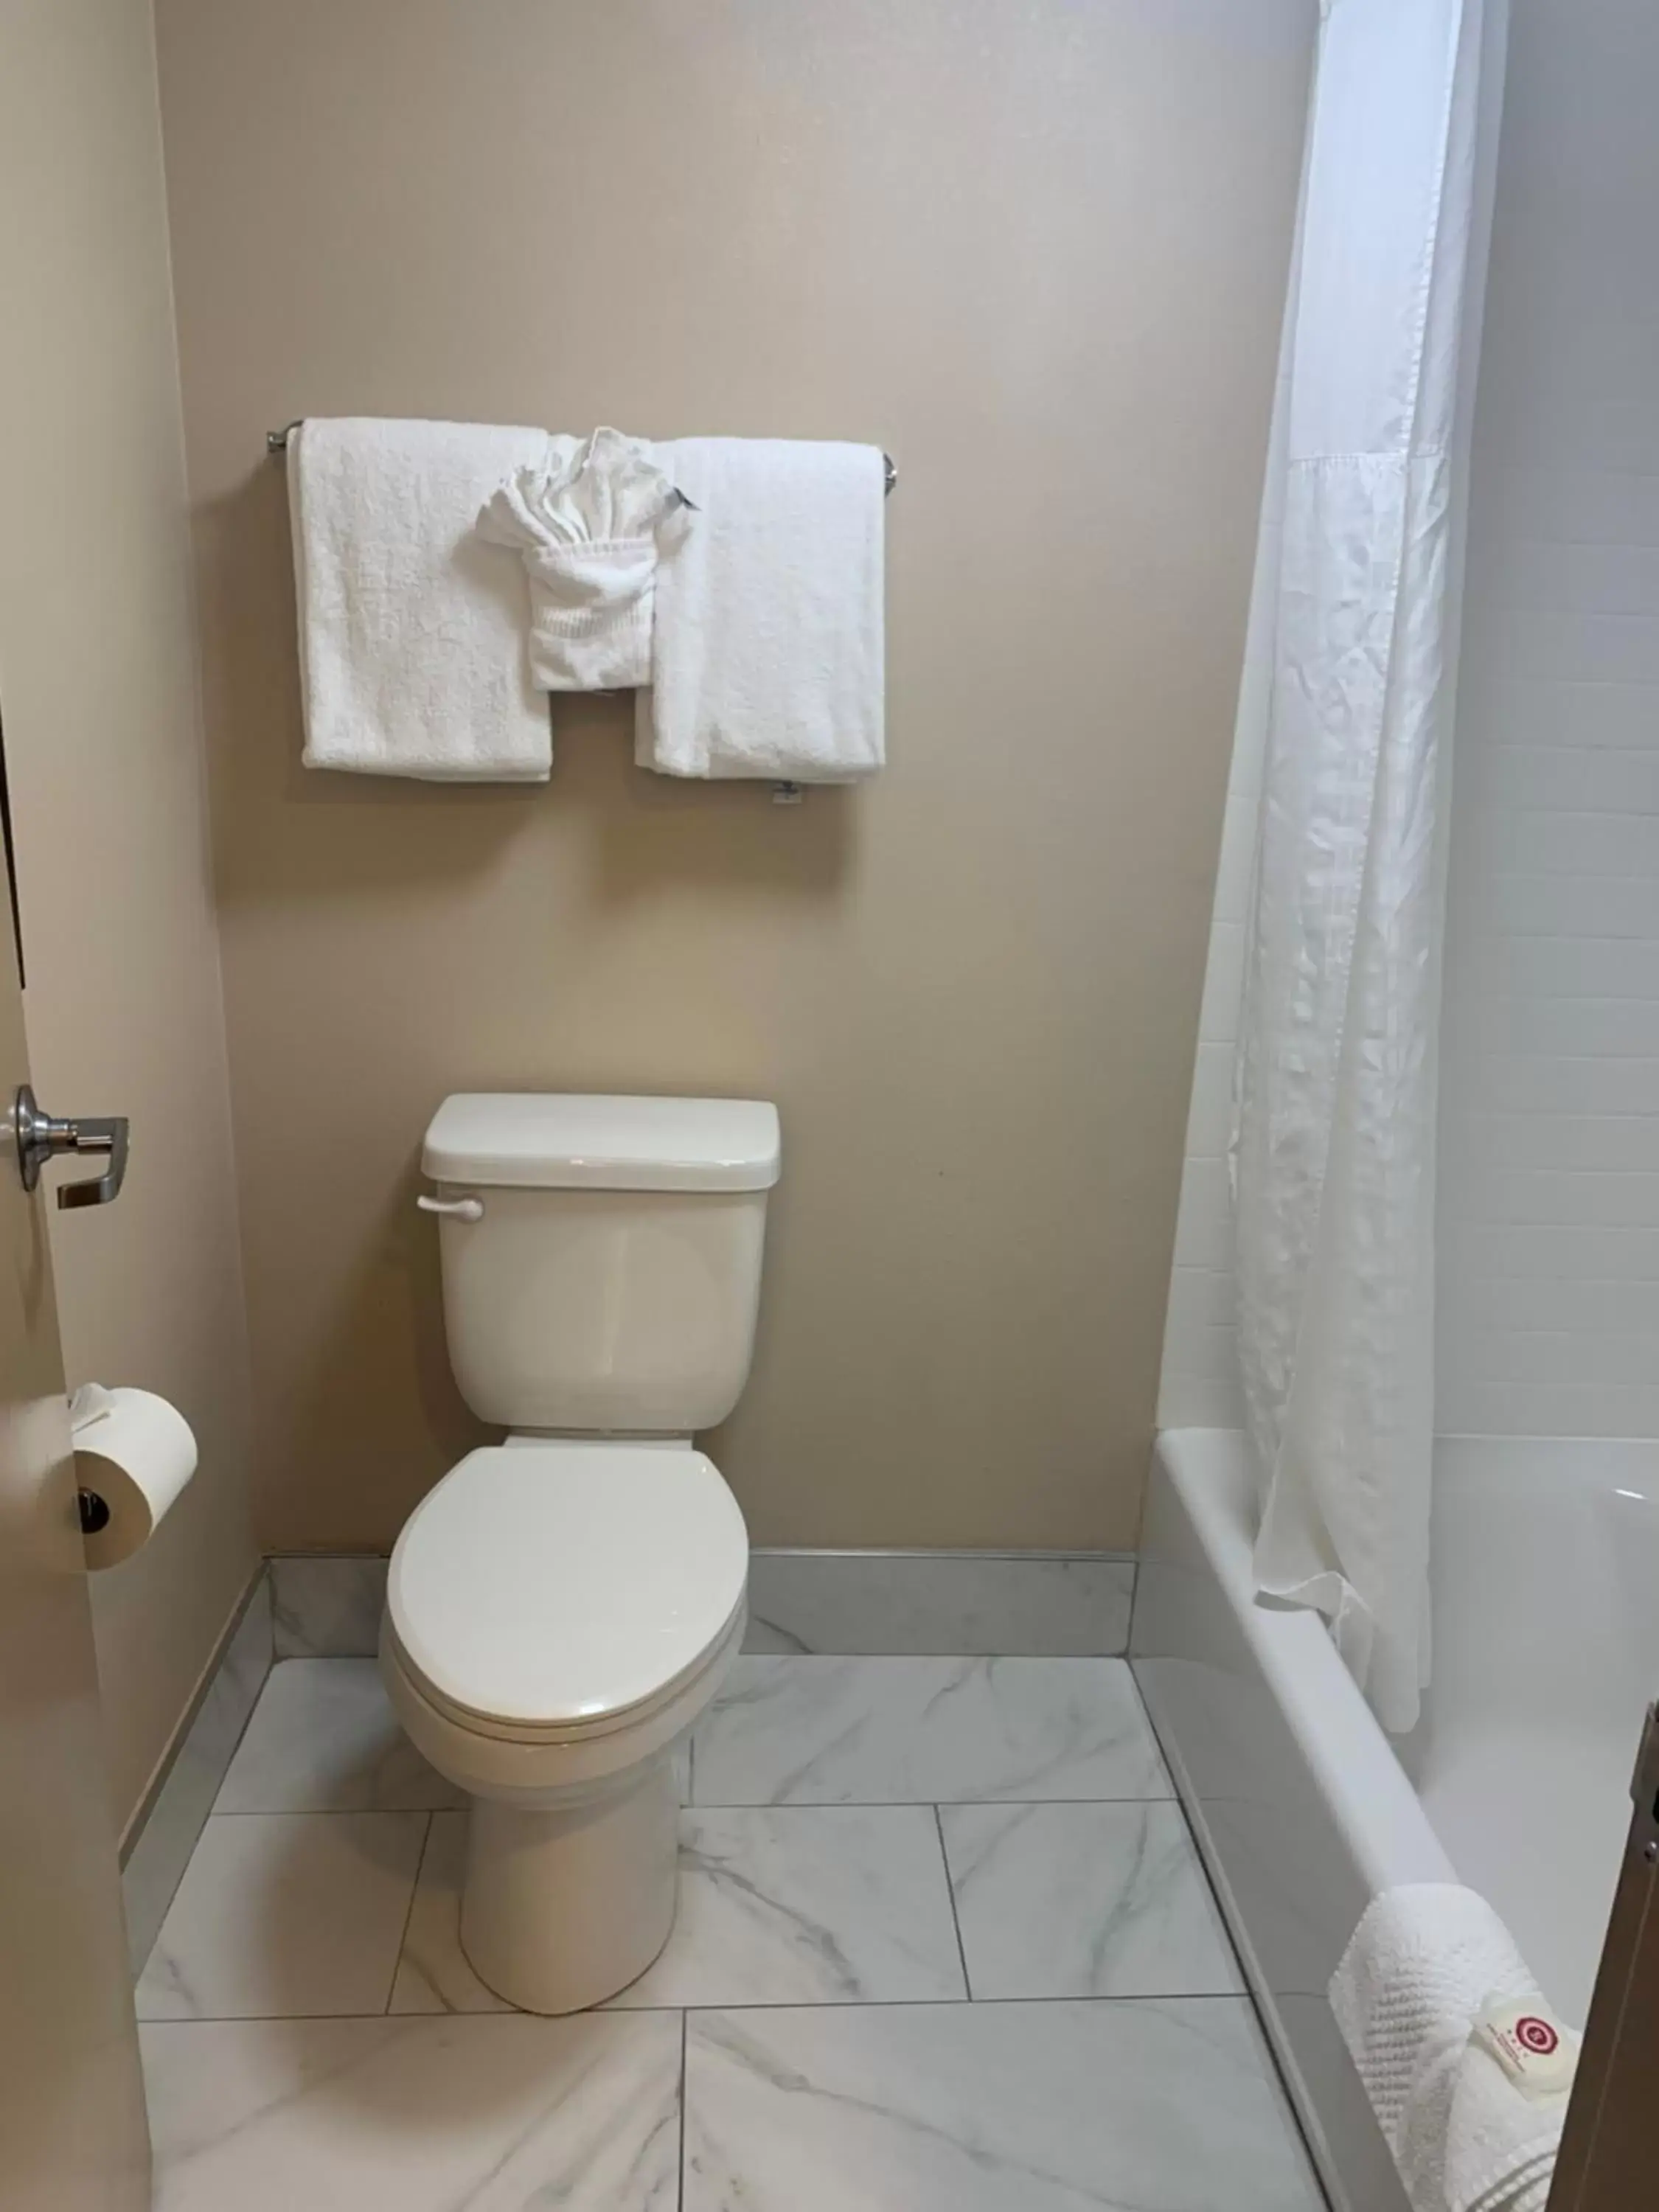 Bathroom in Comfort Inn Horsham - Philadelphia